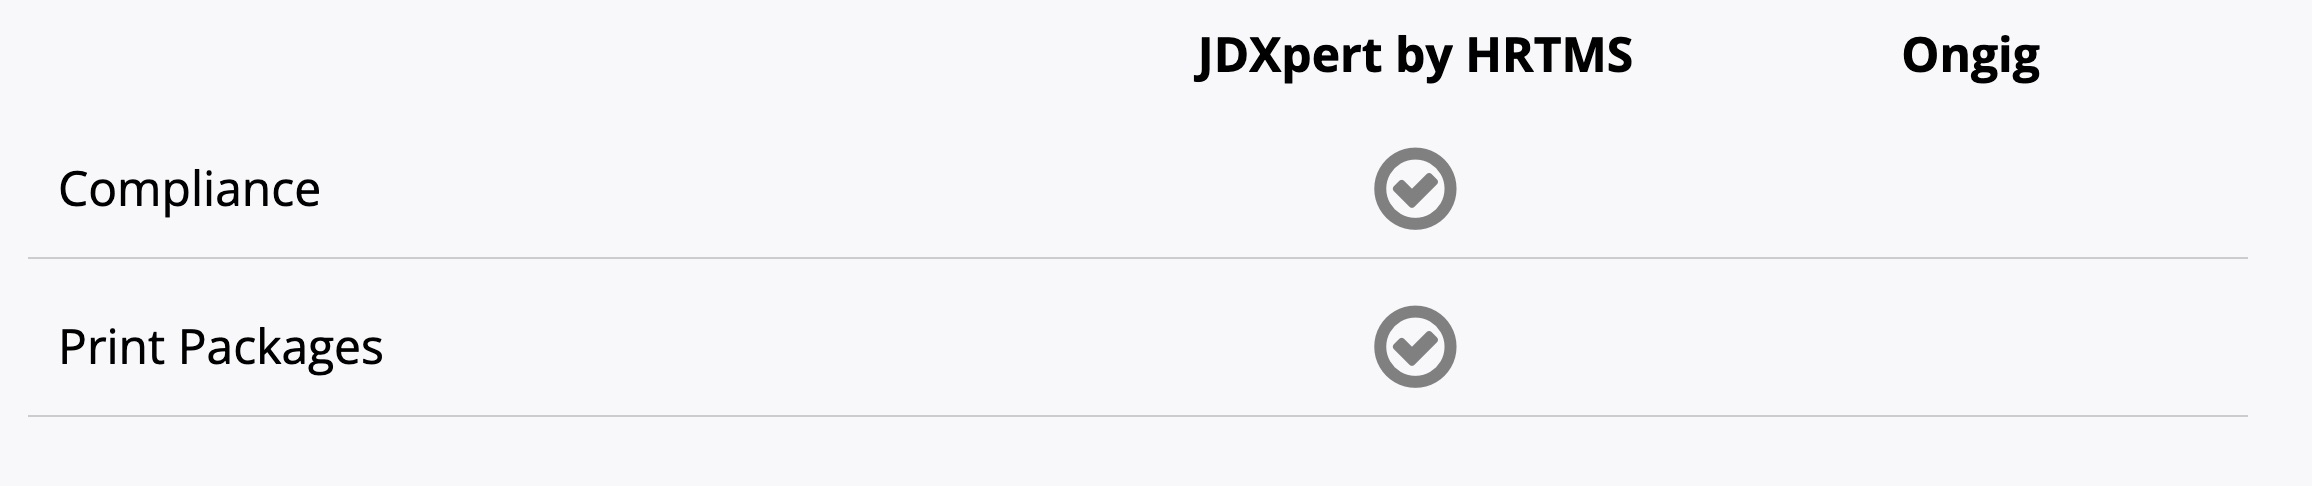 jdxpert-ongig-comparison-compliance